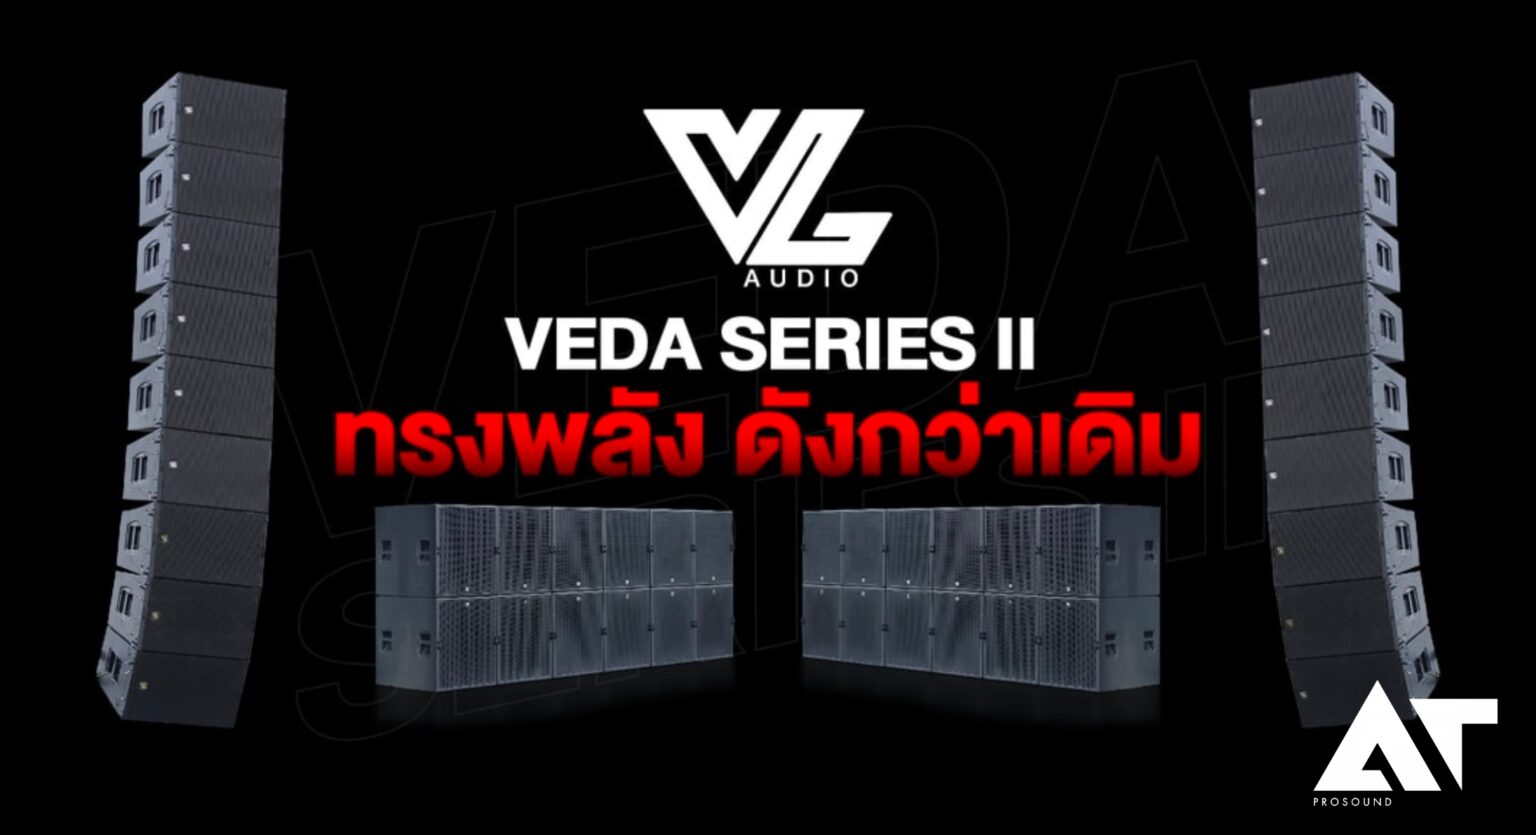 VEDA Series